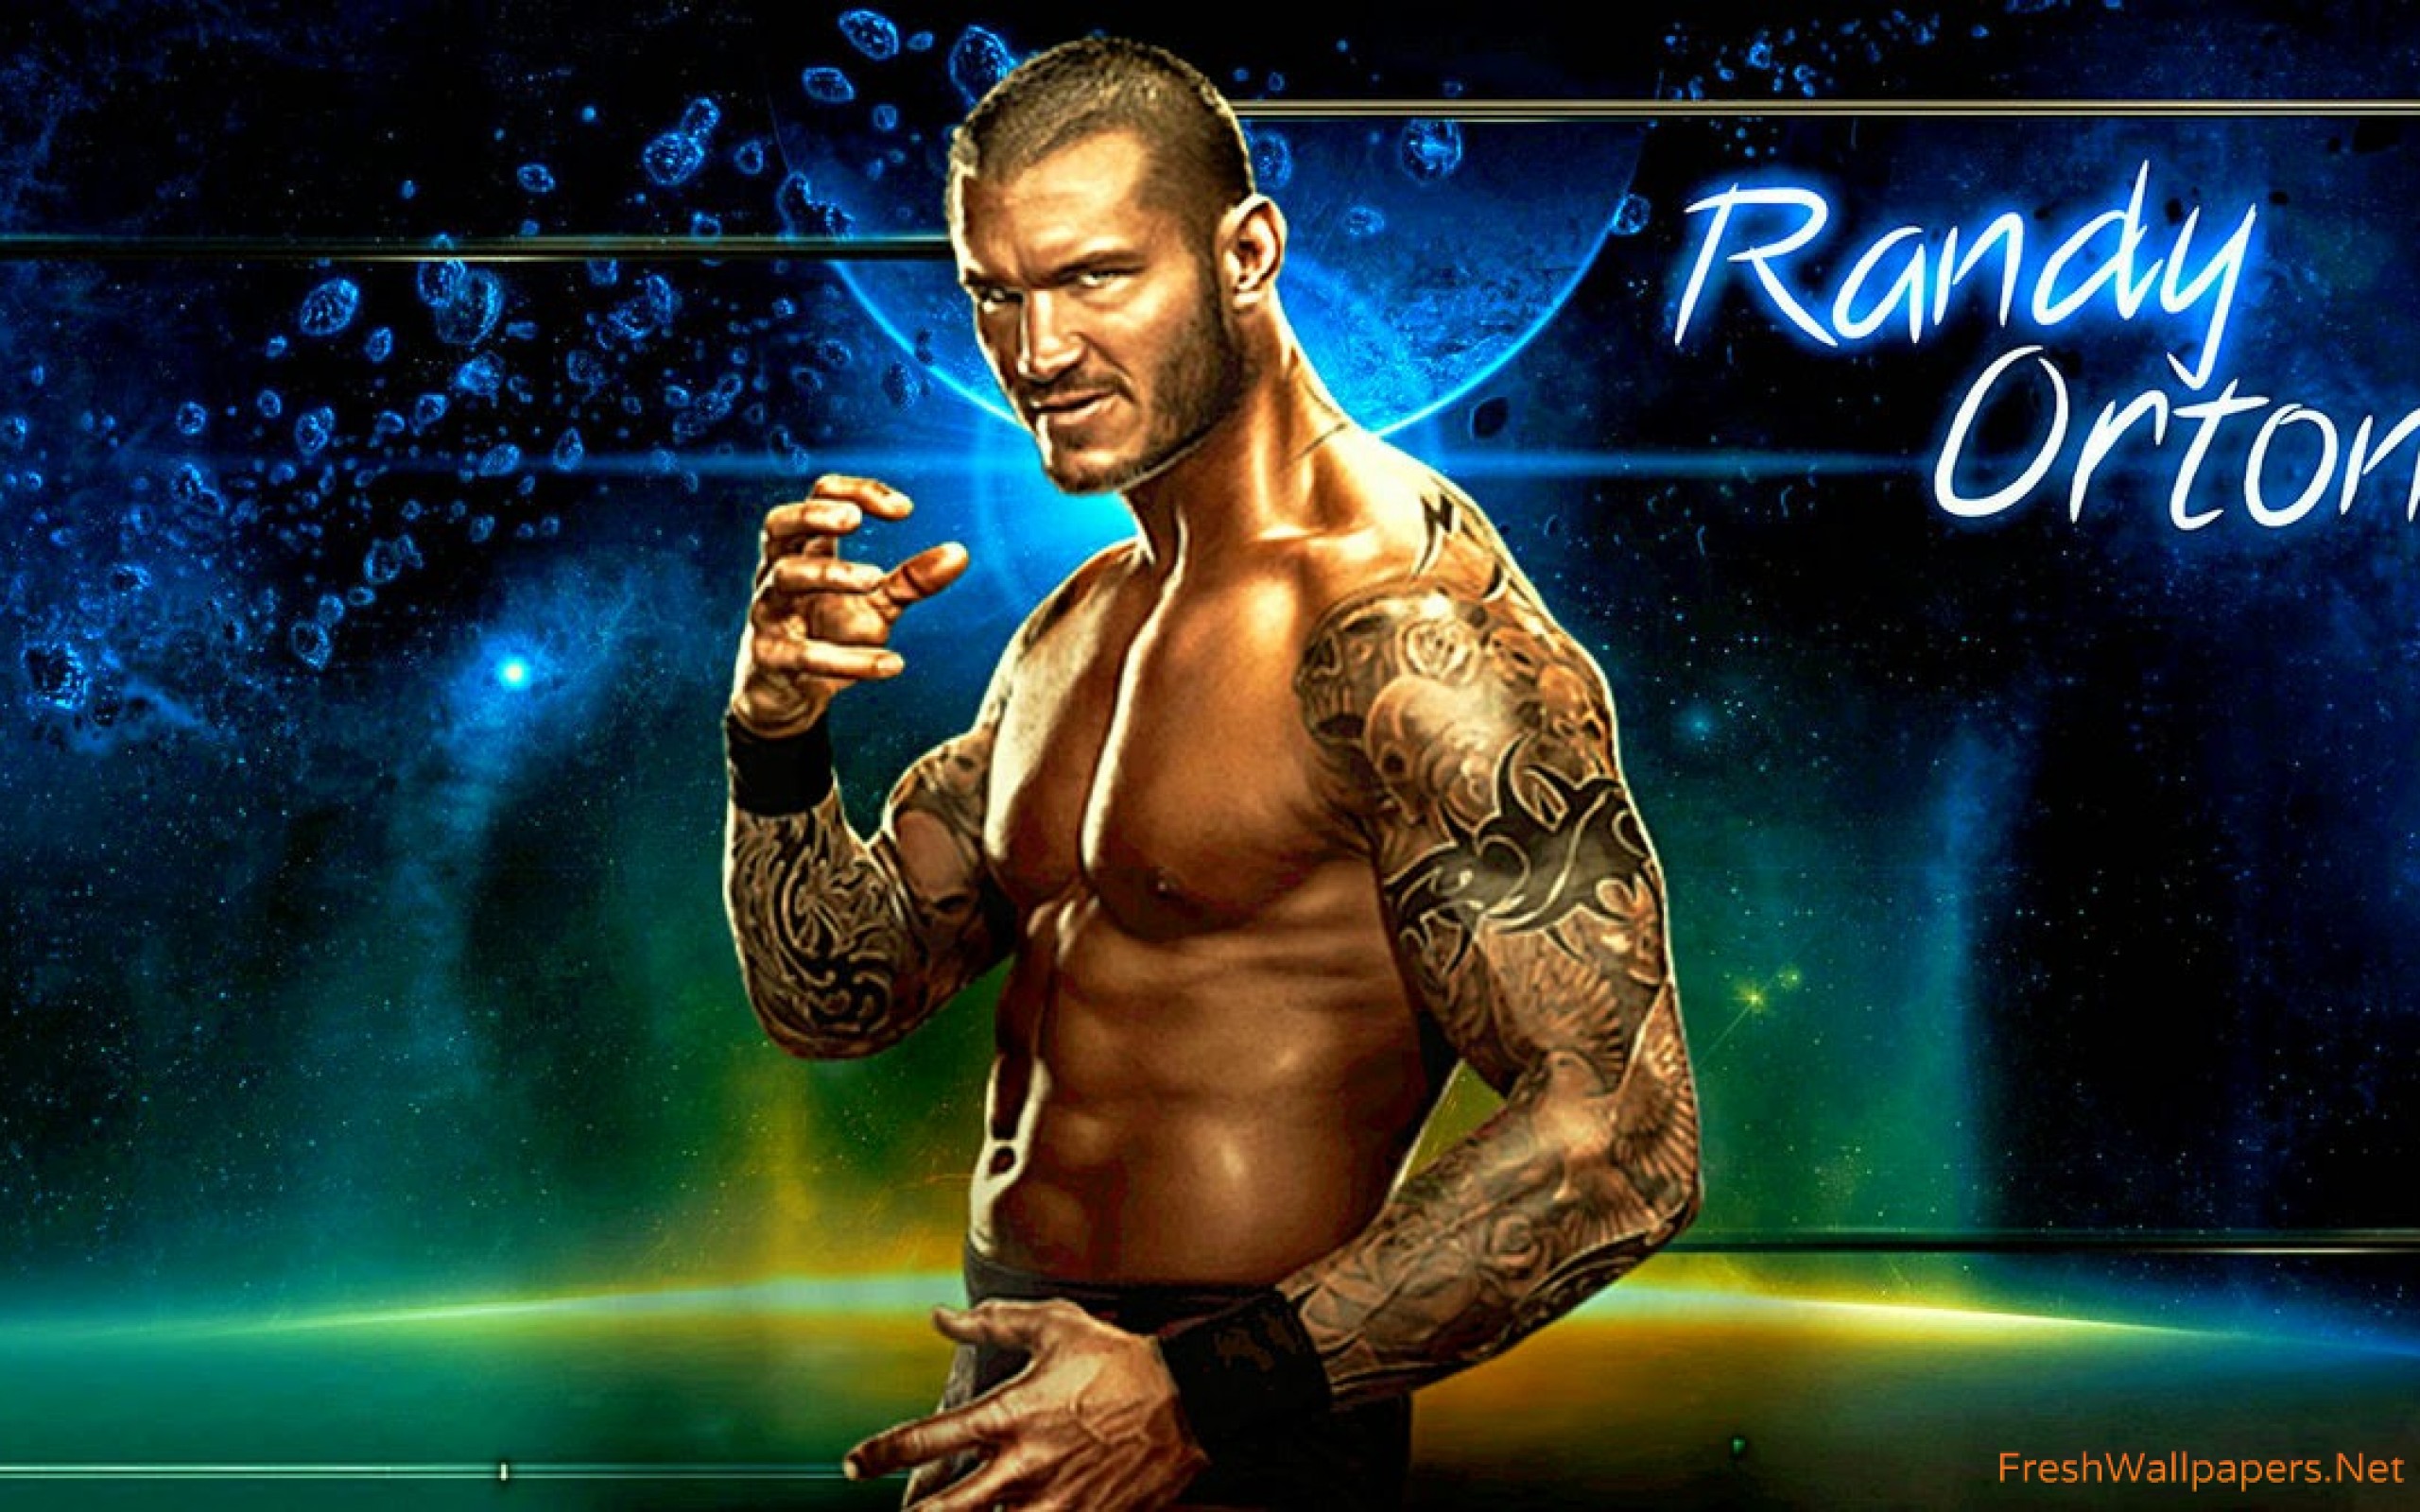 Randy Orton Wallpaper Hd - HD Wallpaper 